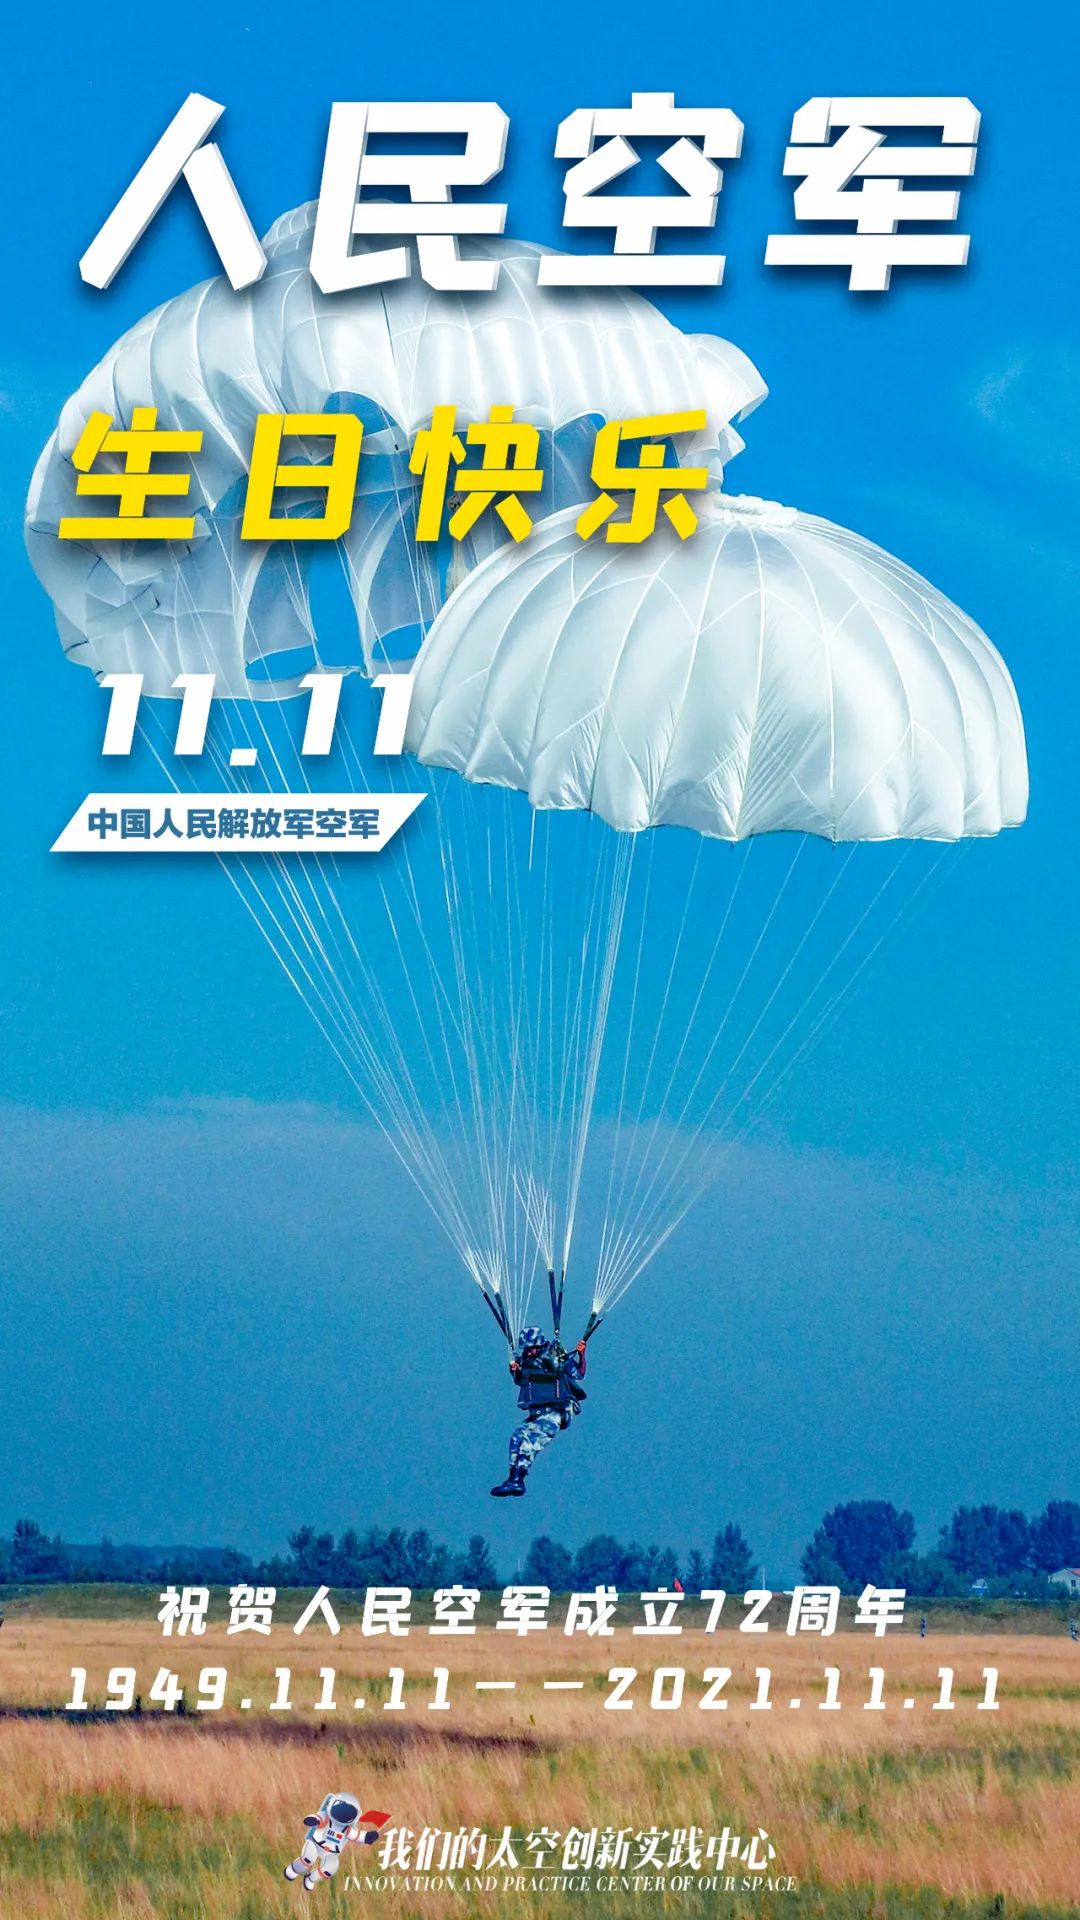 中国人民解放军空军72岁生日快乐